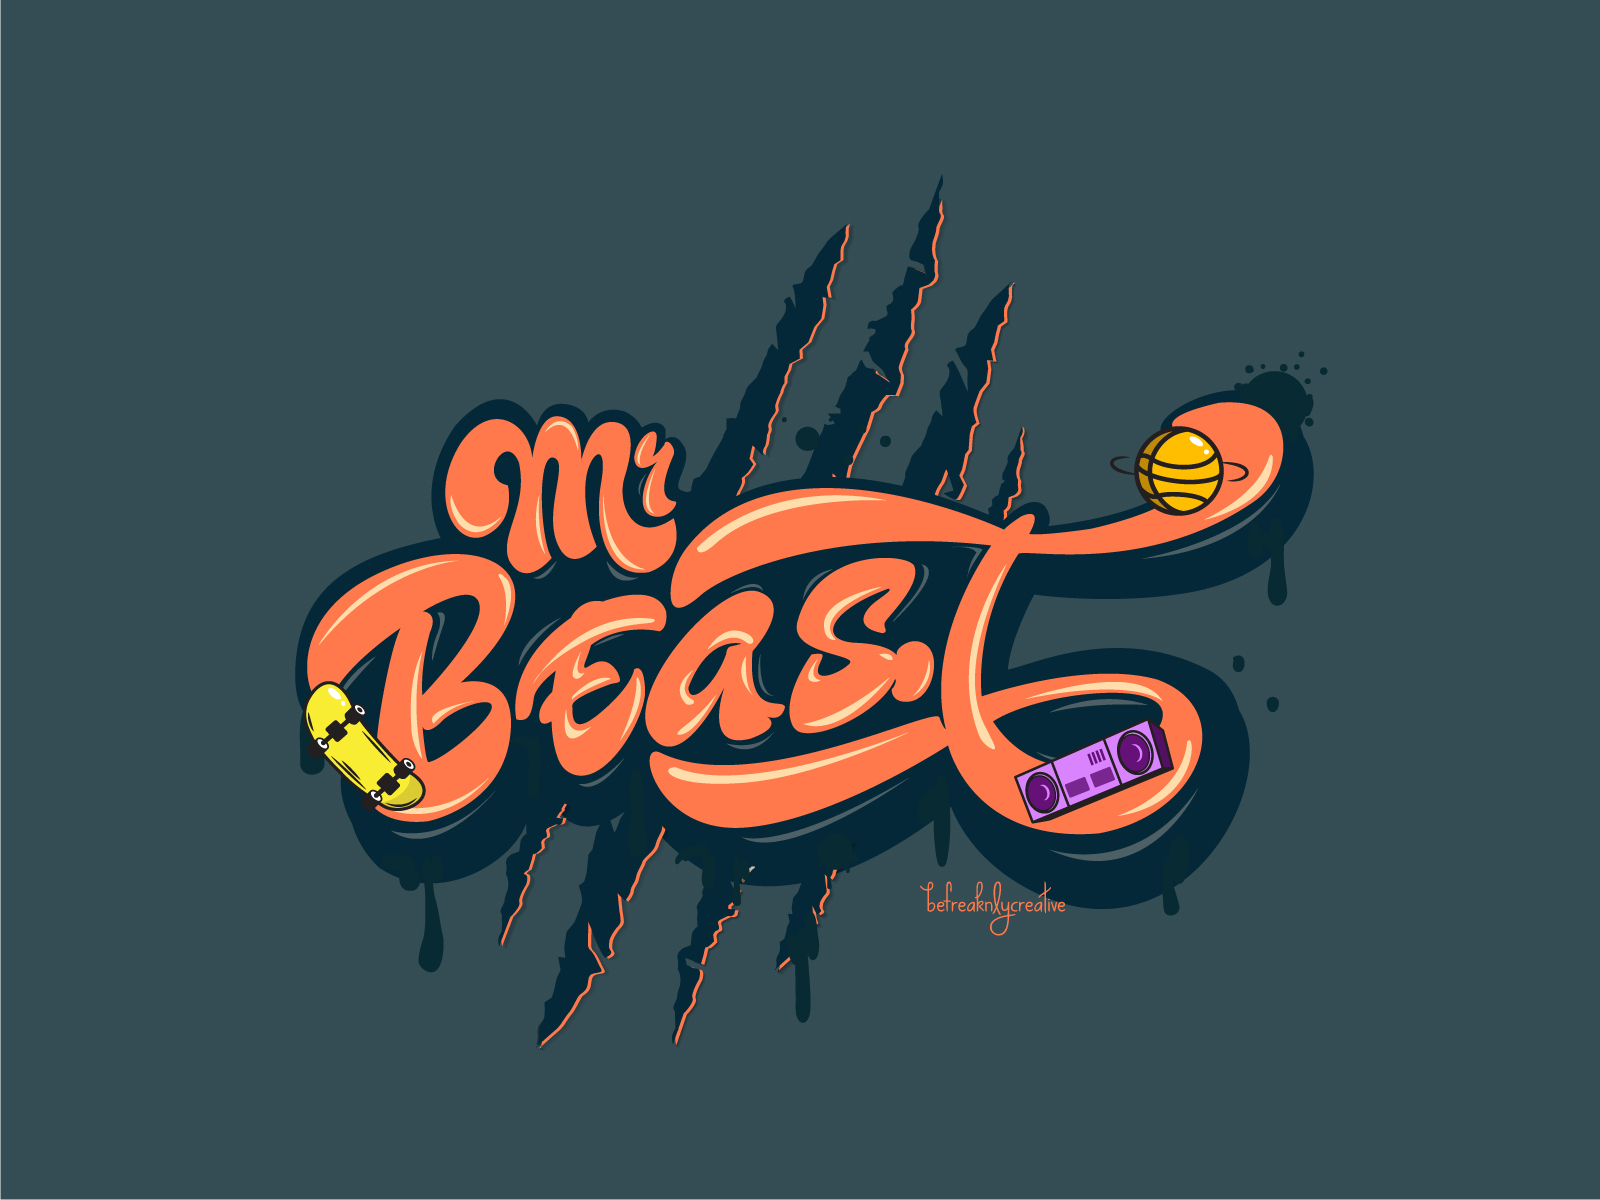 MrBeast by Timi Alonge on Dribbble mr beast logo HD wallpaper  Pxfuel